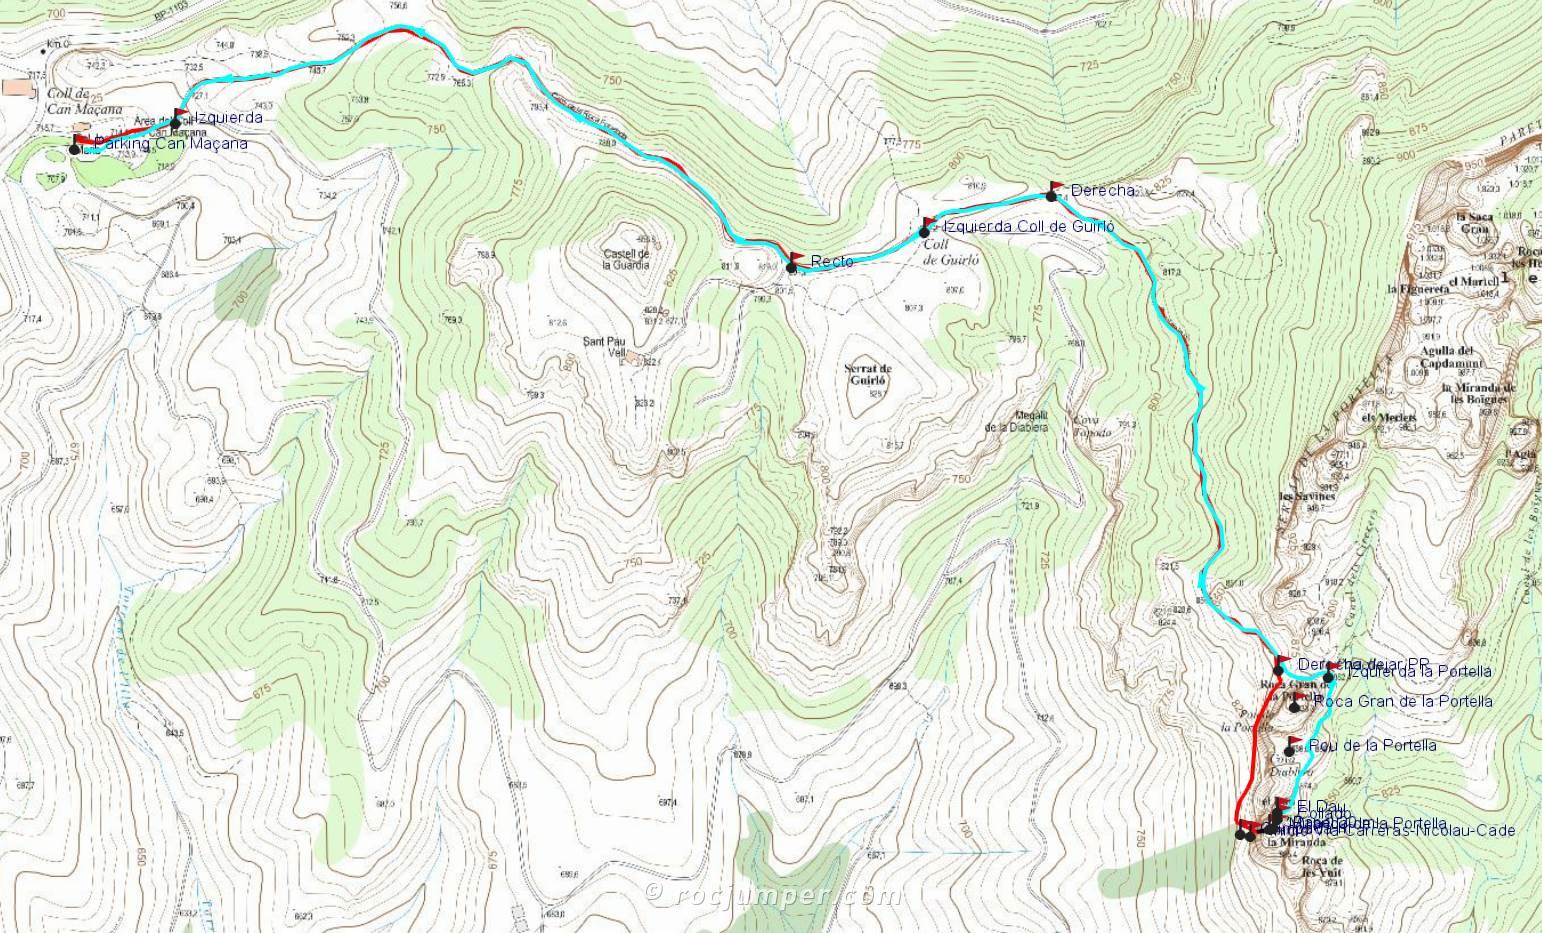 Mapa - Vía Carreras-Nicolau-Cade - Miranda de la Portella - Montserrat - RocJumper